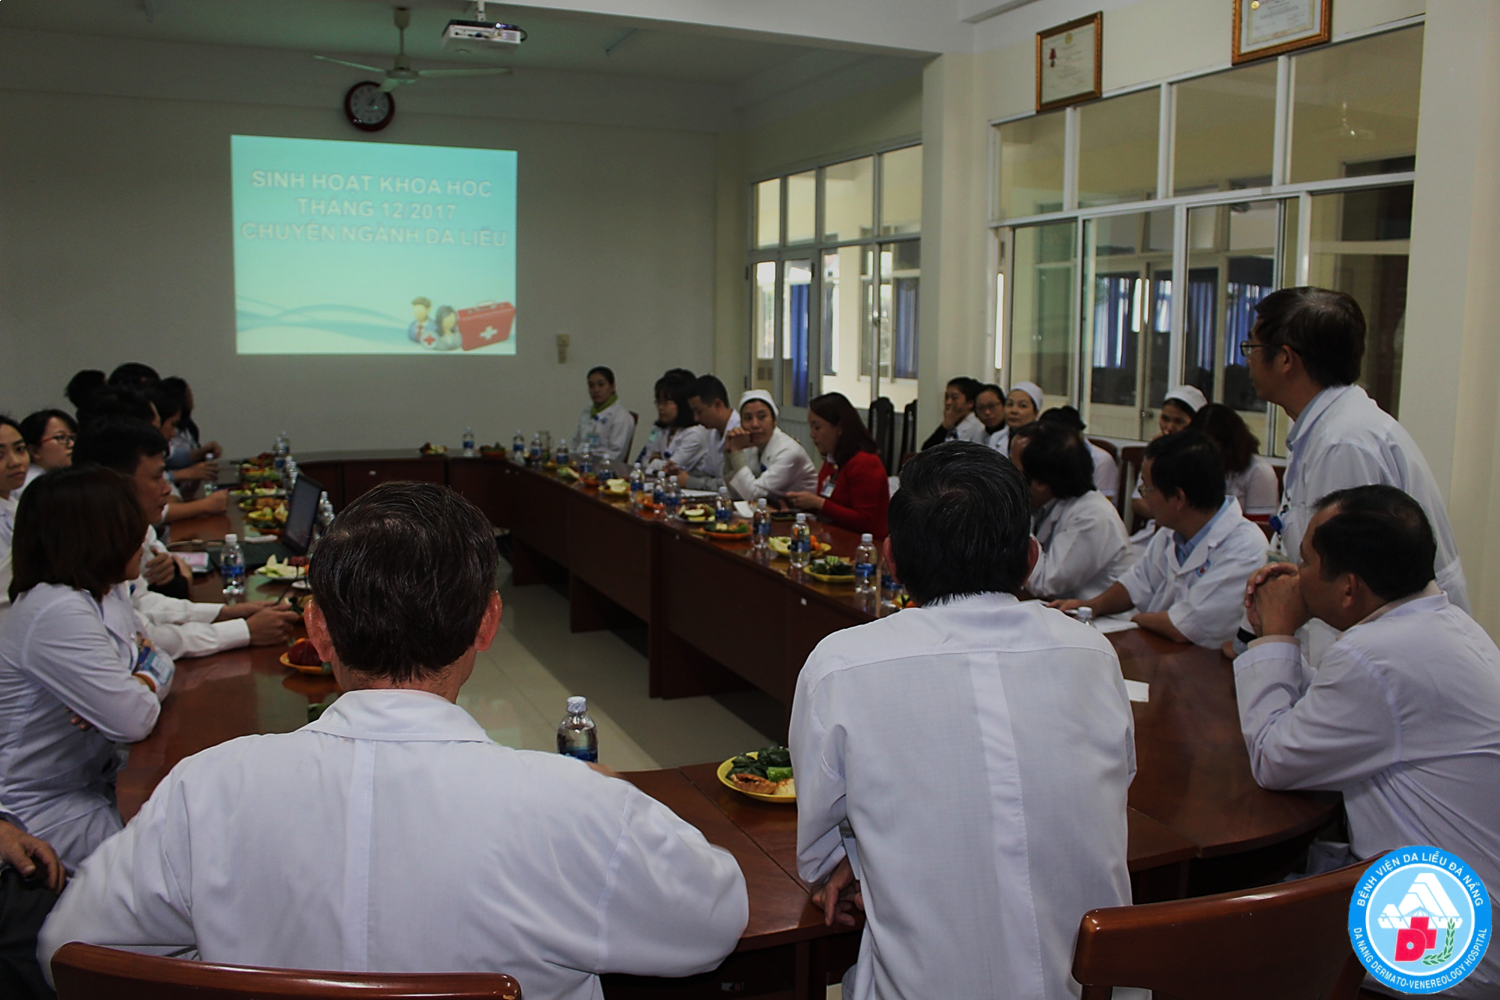 Tổ chức thành công Chương trình Sinh hoạt khoa học tháng 12 Chuyên ngành Da liễu tại Bệnh viện Da liễu Đà Nẵng